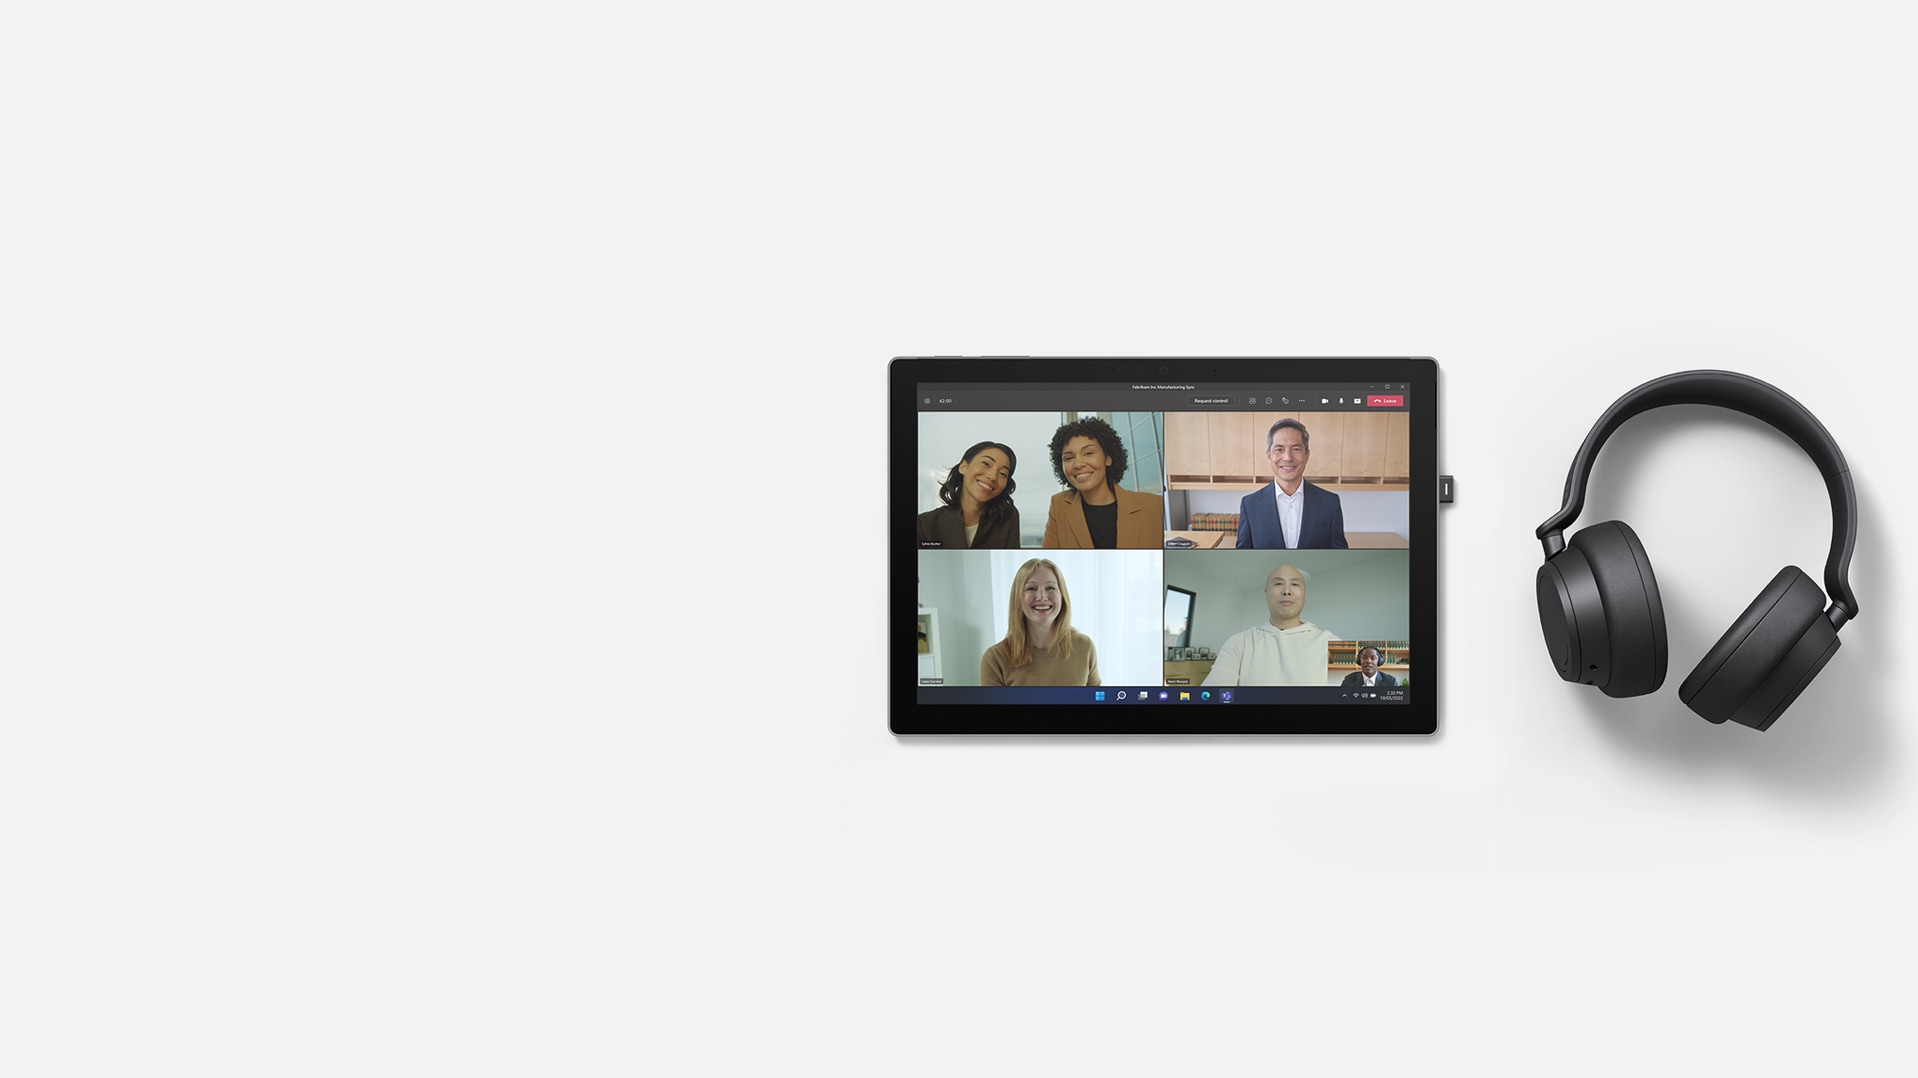 在 Surface Pro 7+ 上使用 Microsoft Teams 同框场景模式，右侧放着 Surface Headphones 2+